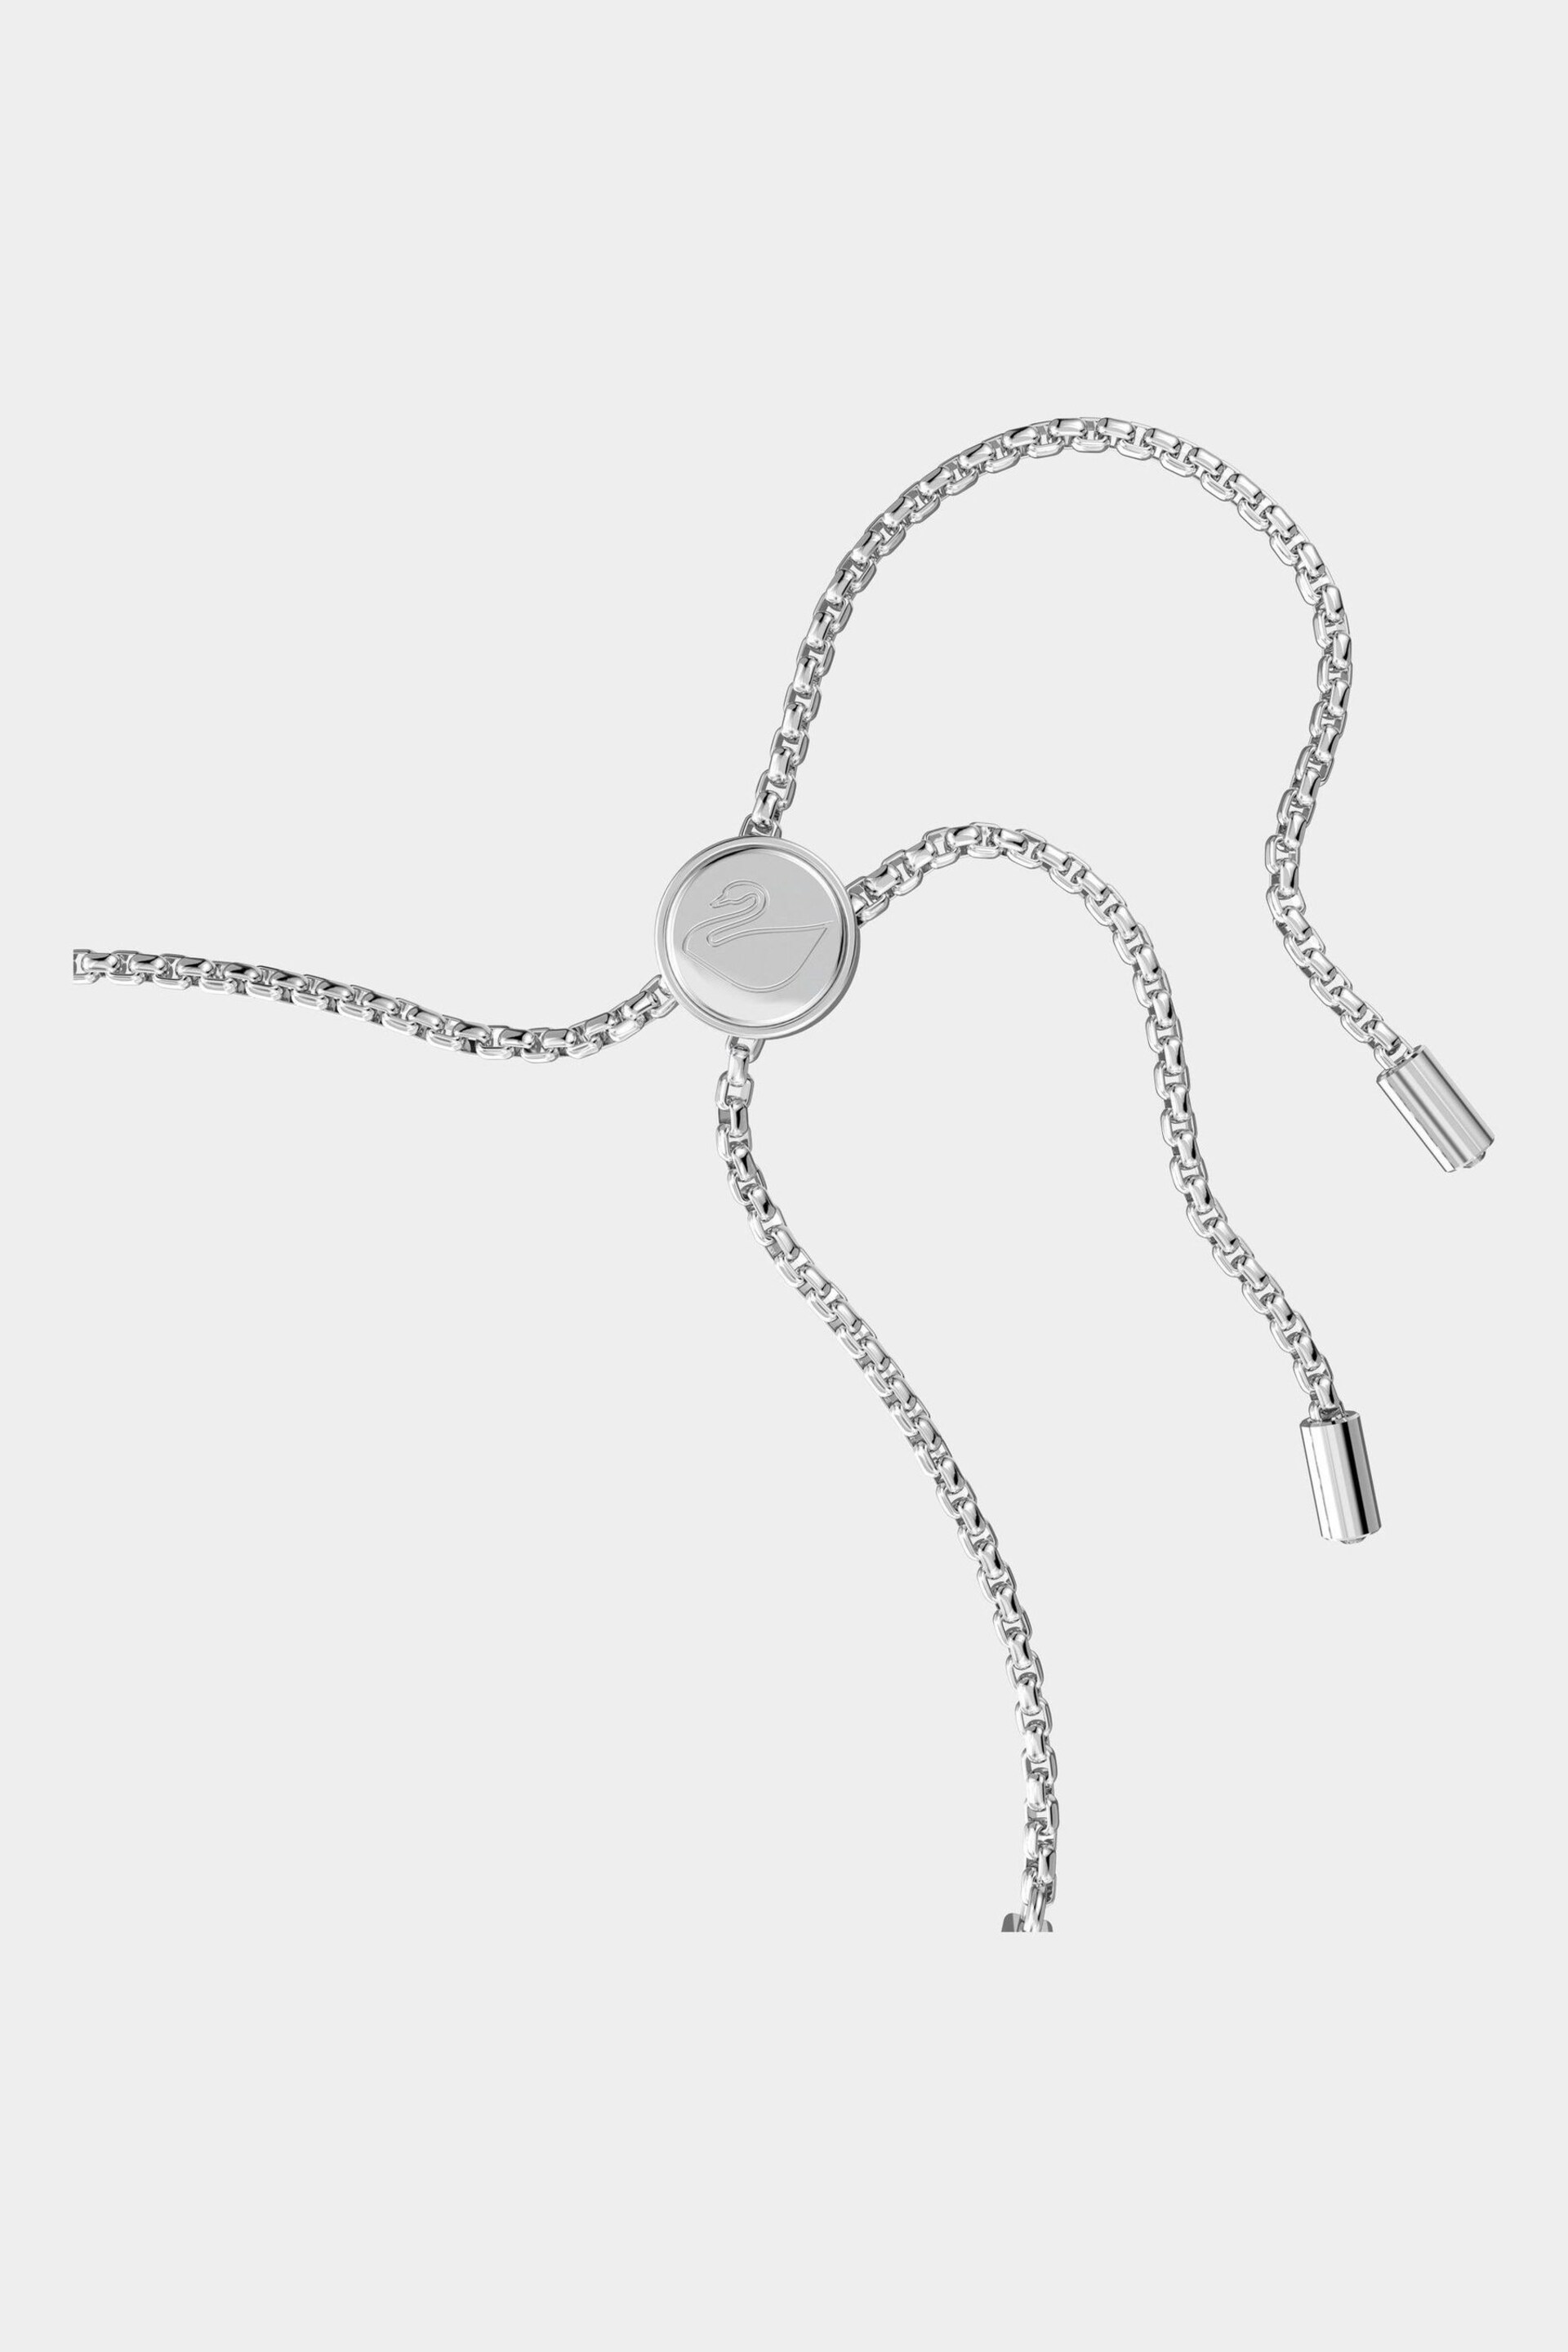 Swarovski Silver Tone Subtle Soft Bracelet - Image 3 of 6